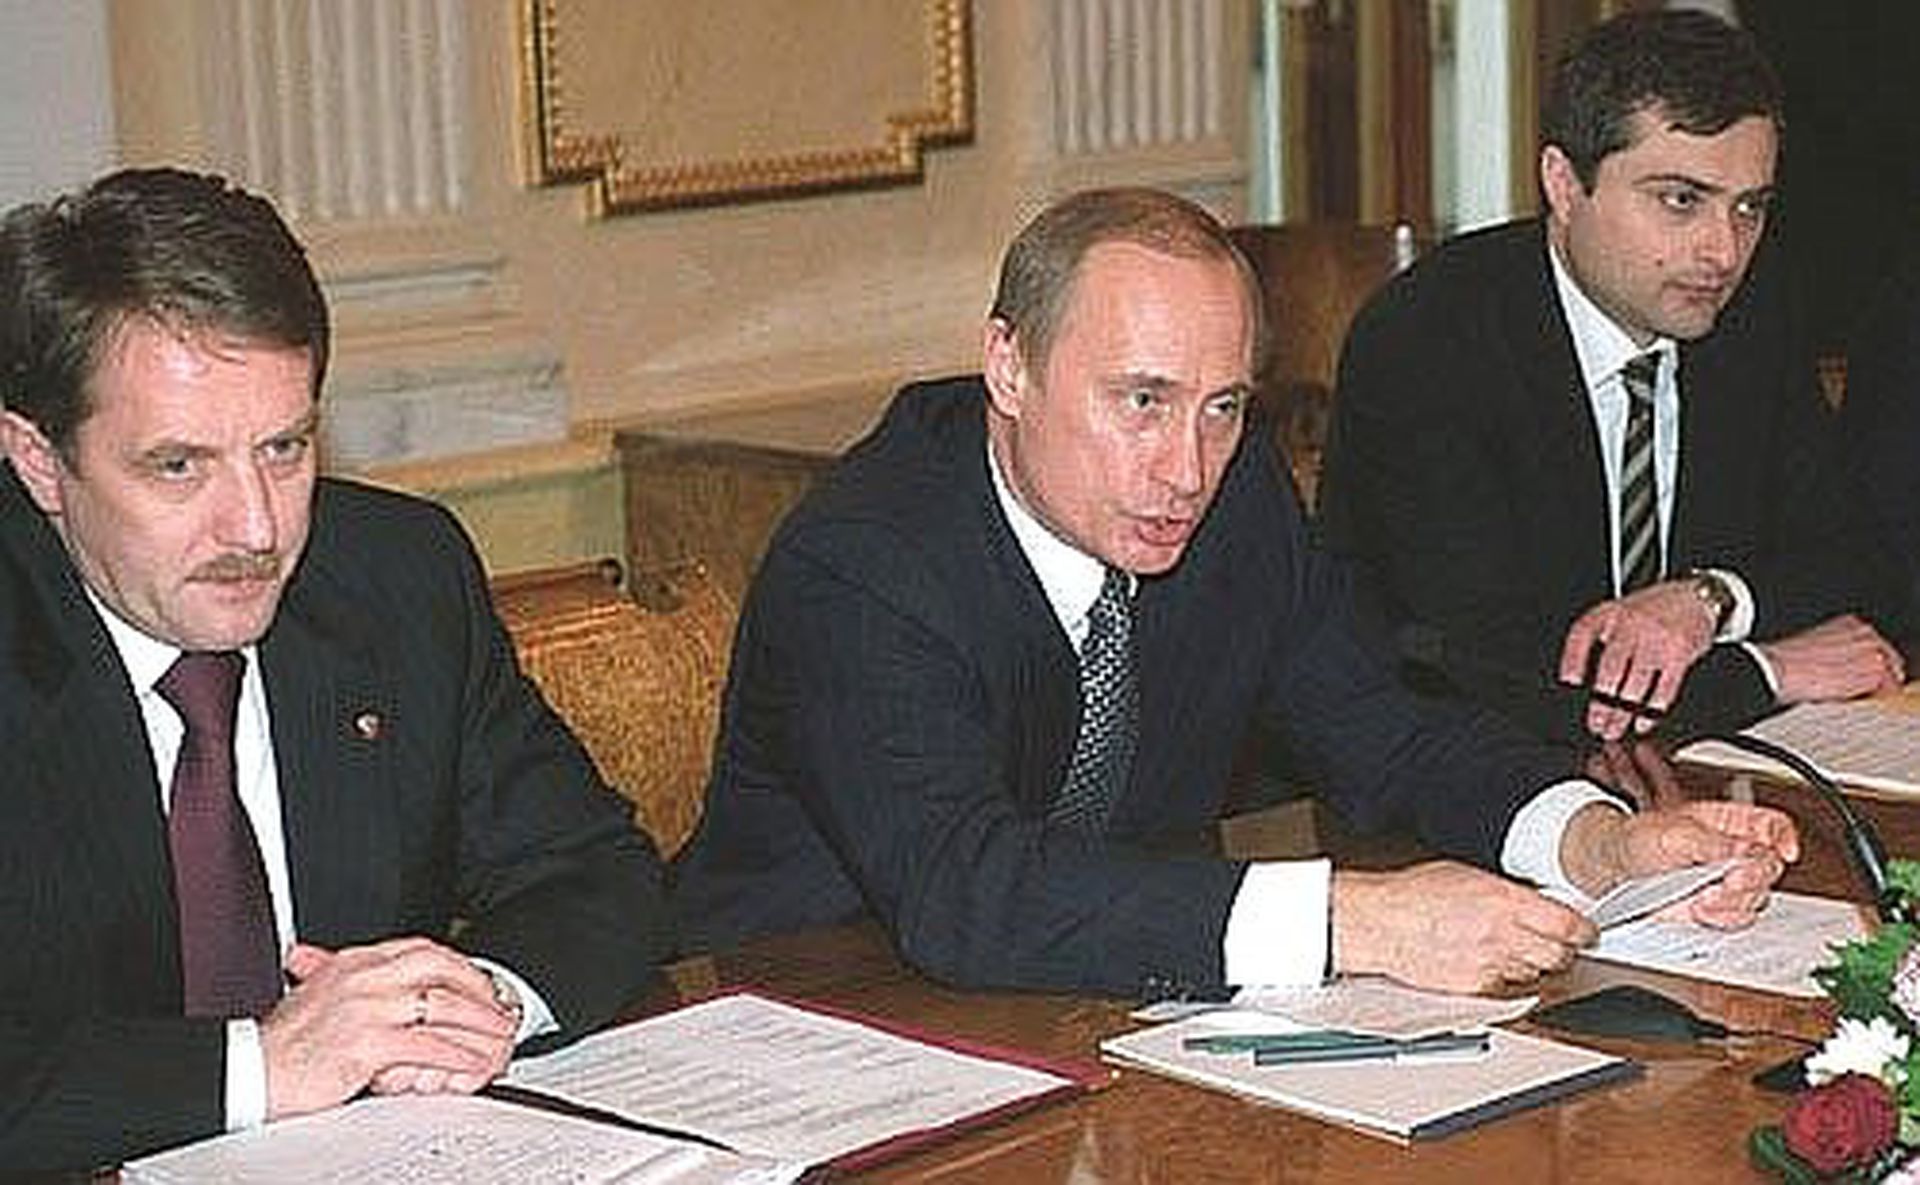 苏尔科夫（Vladislav Surkov，右），1964年生，自1999年为普京担任第一副幕僚长开始于政坛崭露头角，先后担任普京和梅德韦杰夫的第一副幕僚长、俄罗斯联邦副总理、总统顾问等职务。图为2003年苏尔科夫、时任农业部长戈尔杰耶夫（Alexei Gordeyev，左）陪同普京出席与俄罗斯农业党的会议。（克里姆林宫）